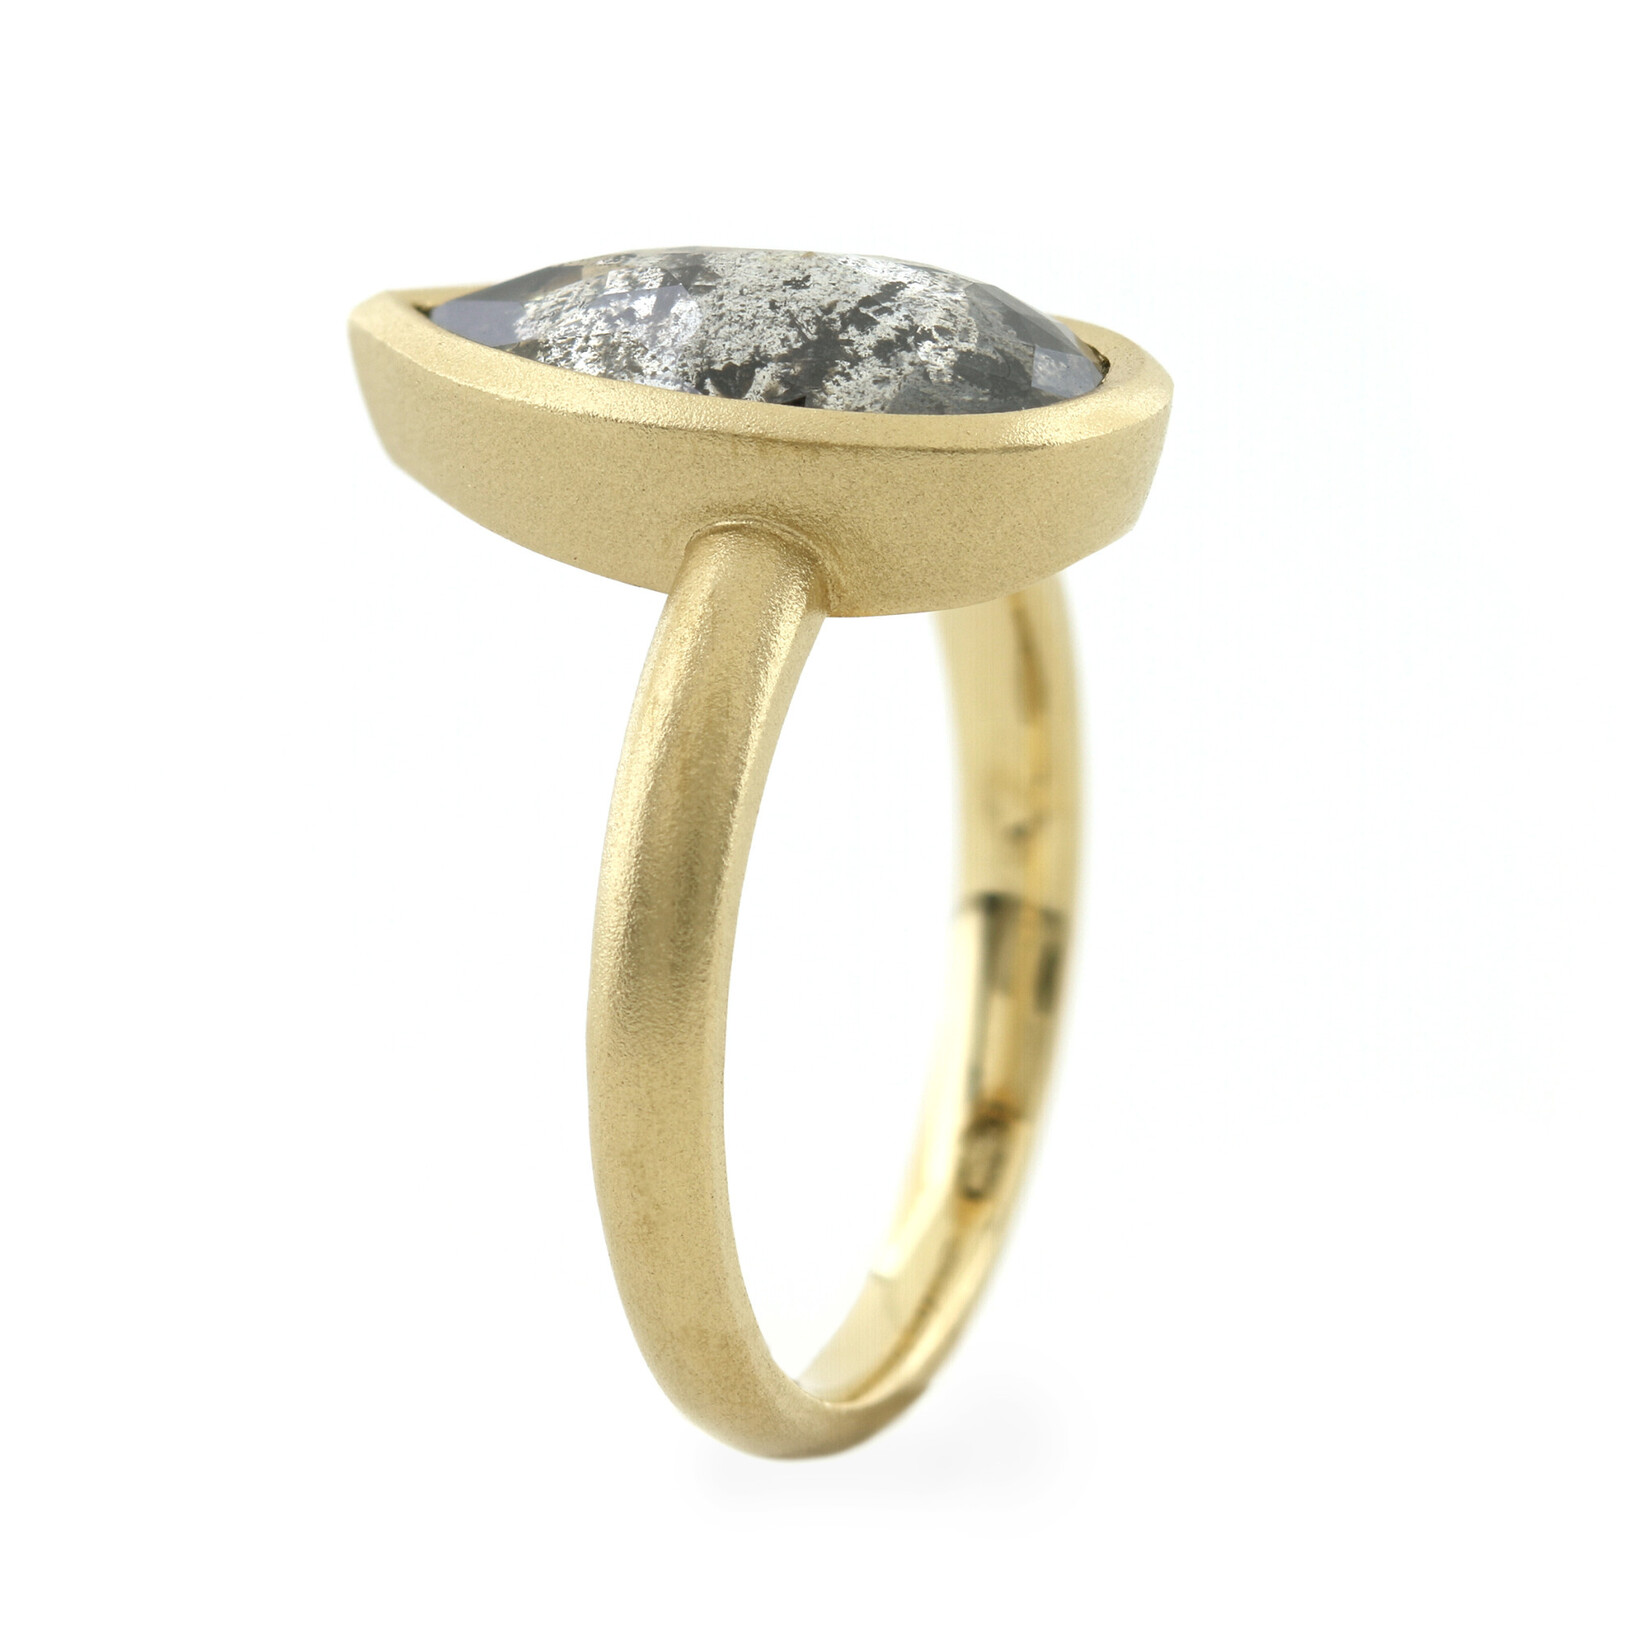 Baxter Moerman Luna Ring with Salt & Pepper Diamond